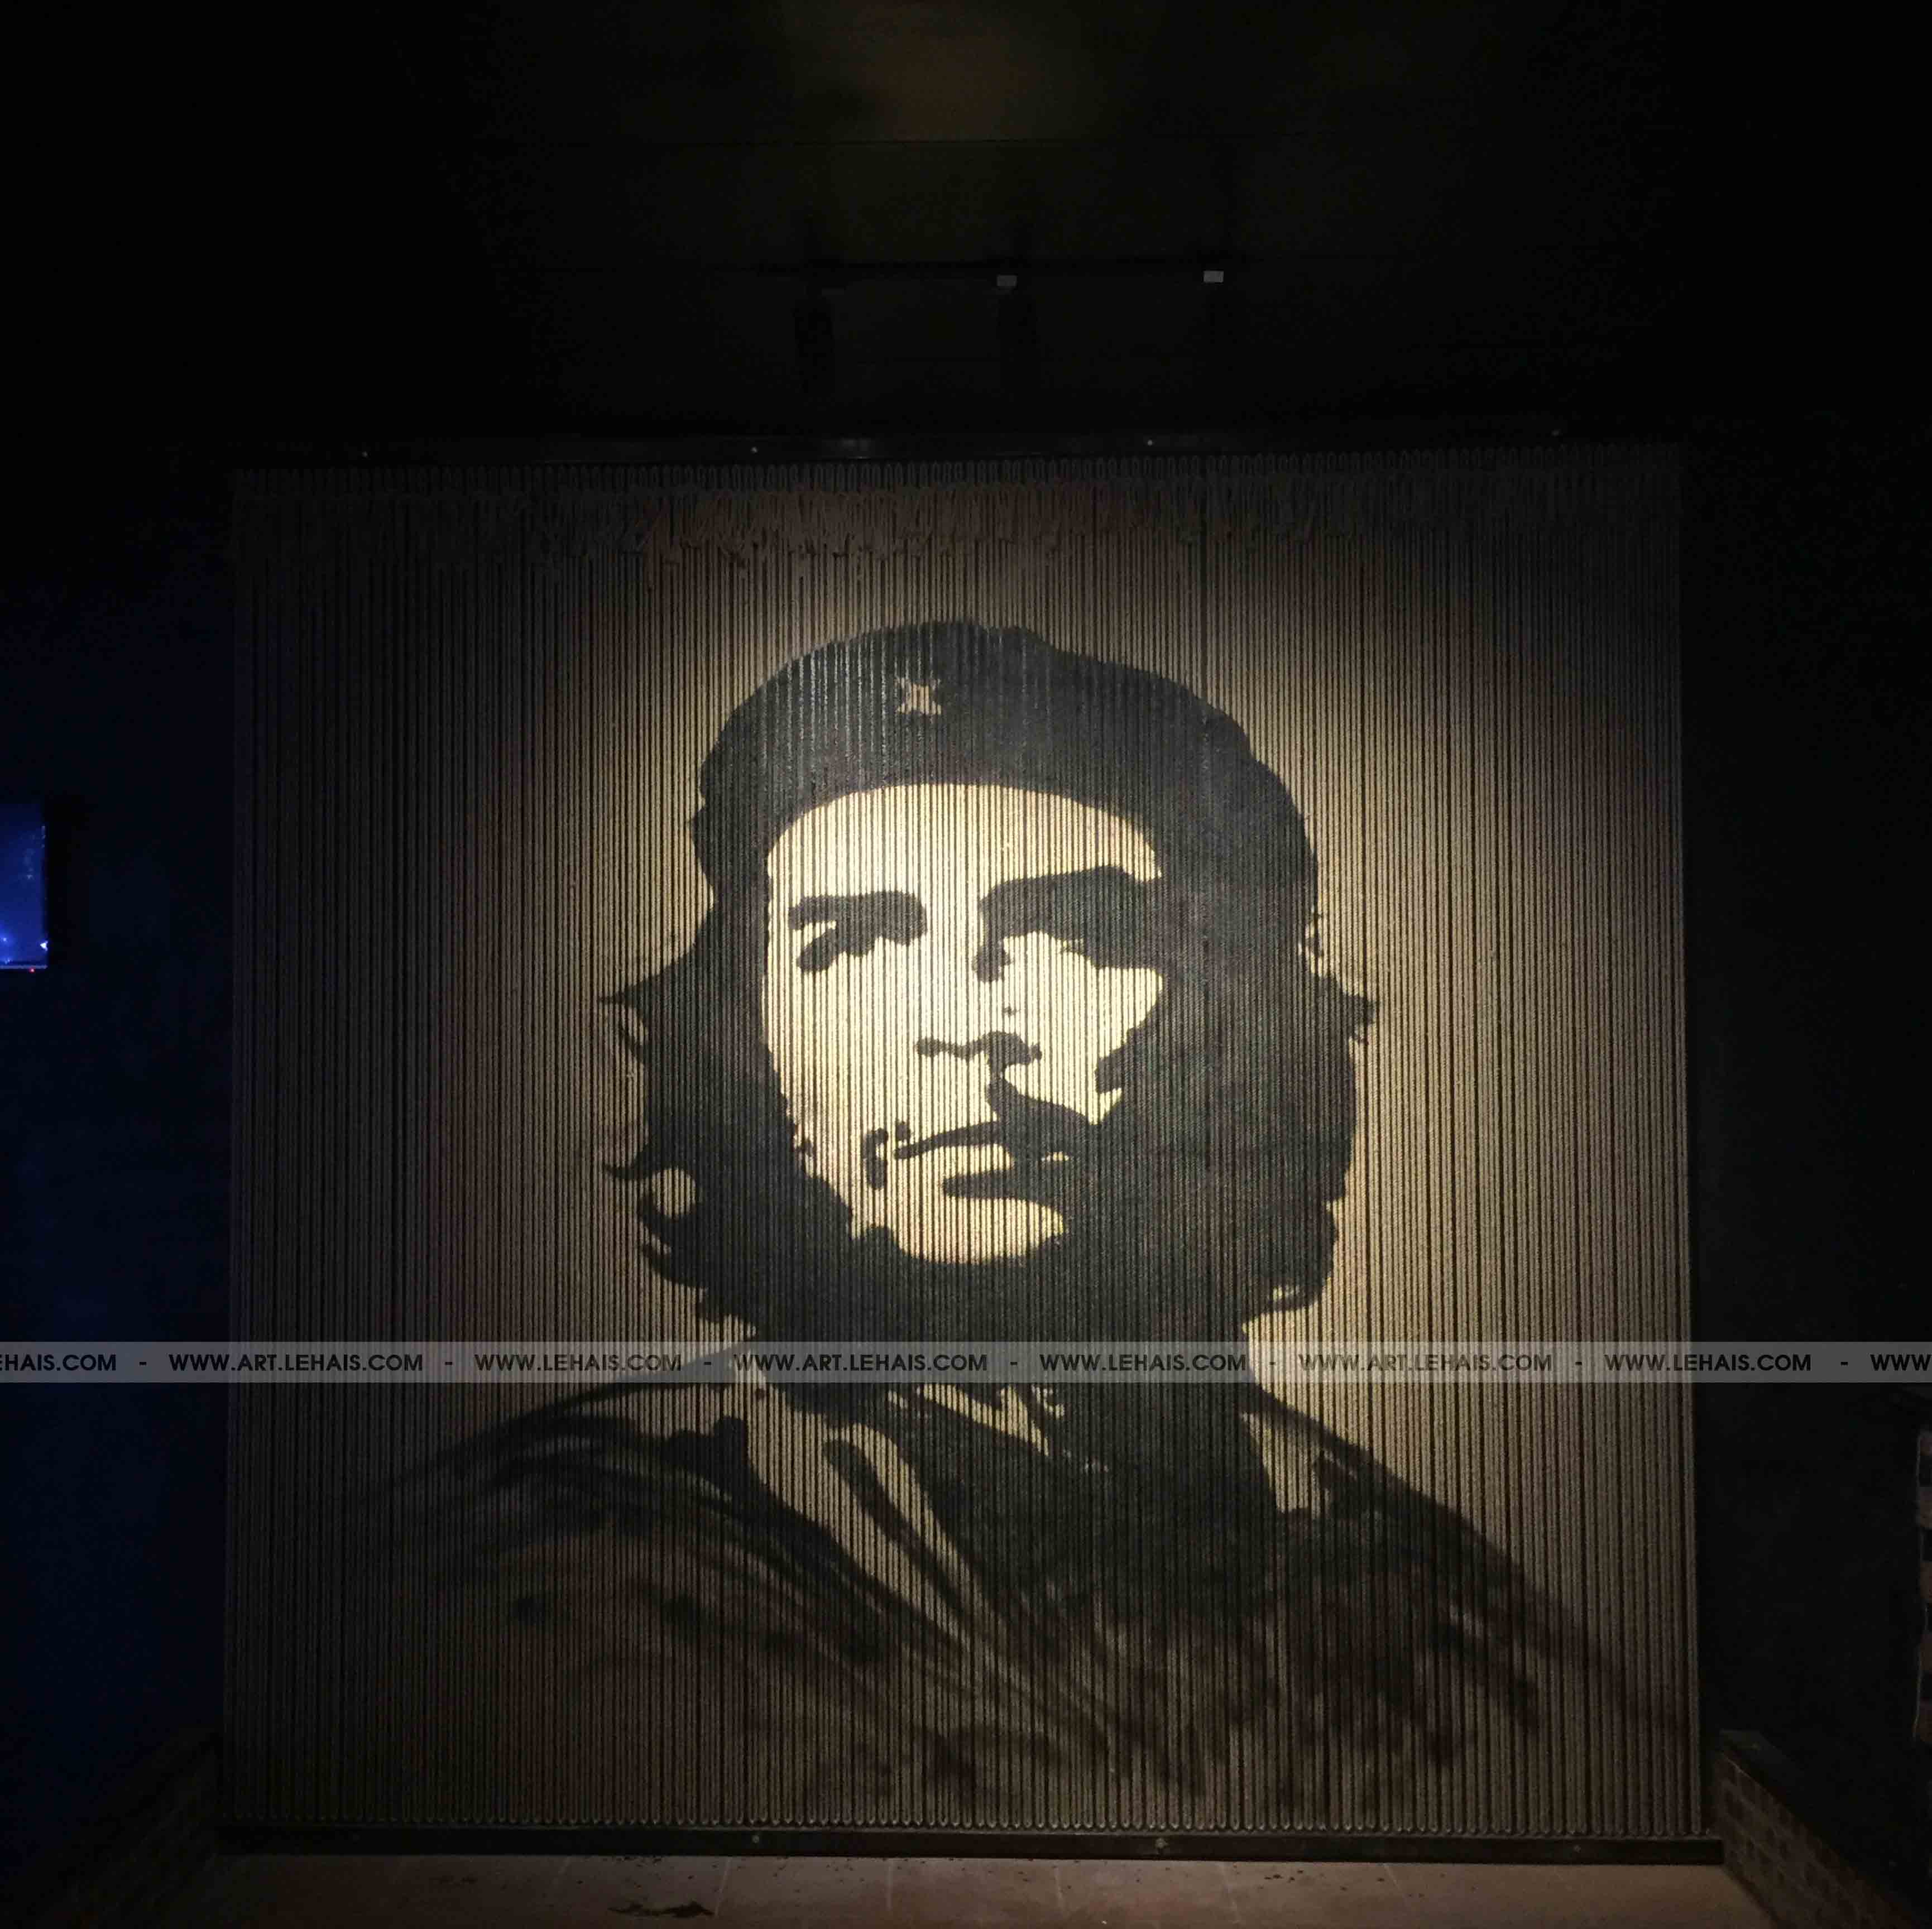 Vẽ nhân vật Che Guevara tại Xanh Coffee ở Như Xuân, Thanh Hóa - TT175LHAR